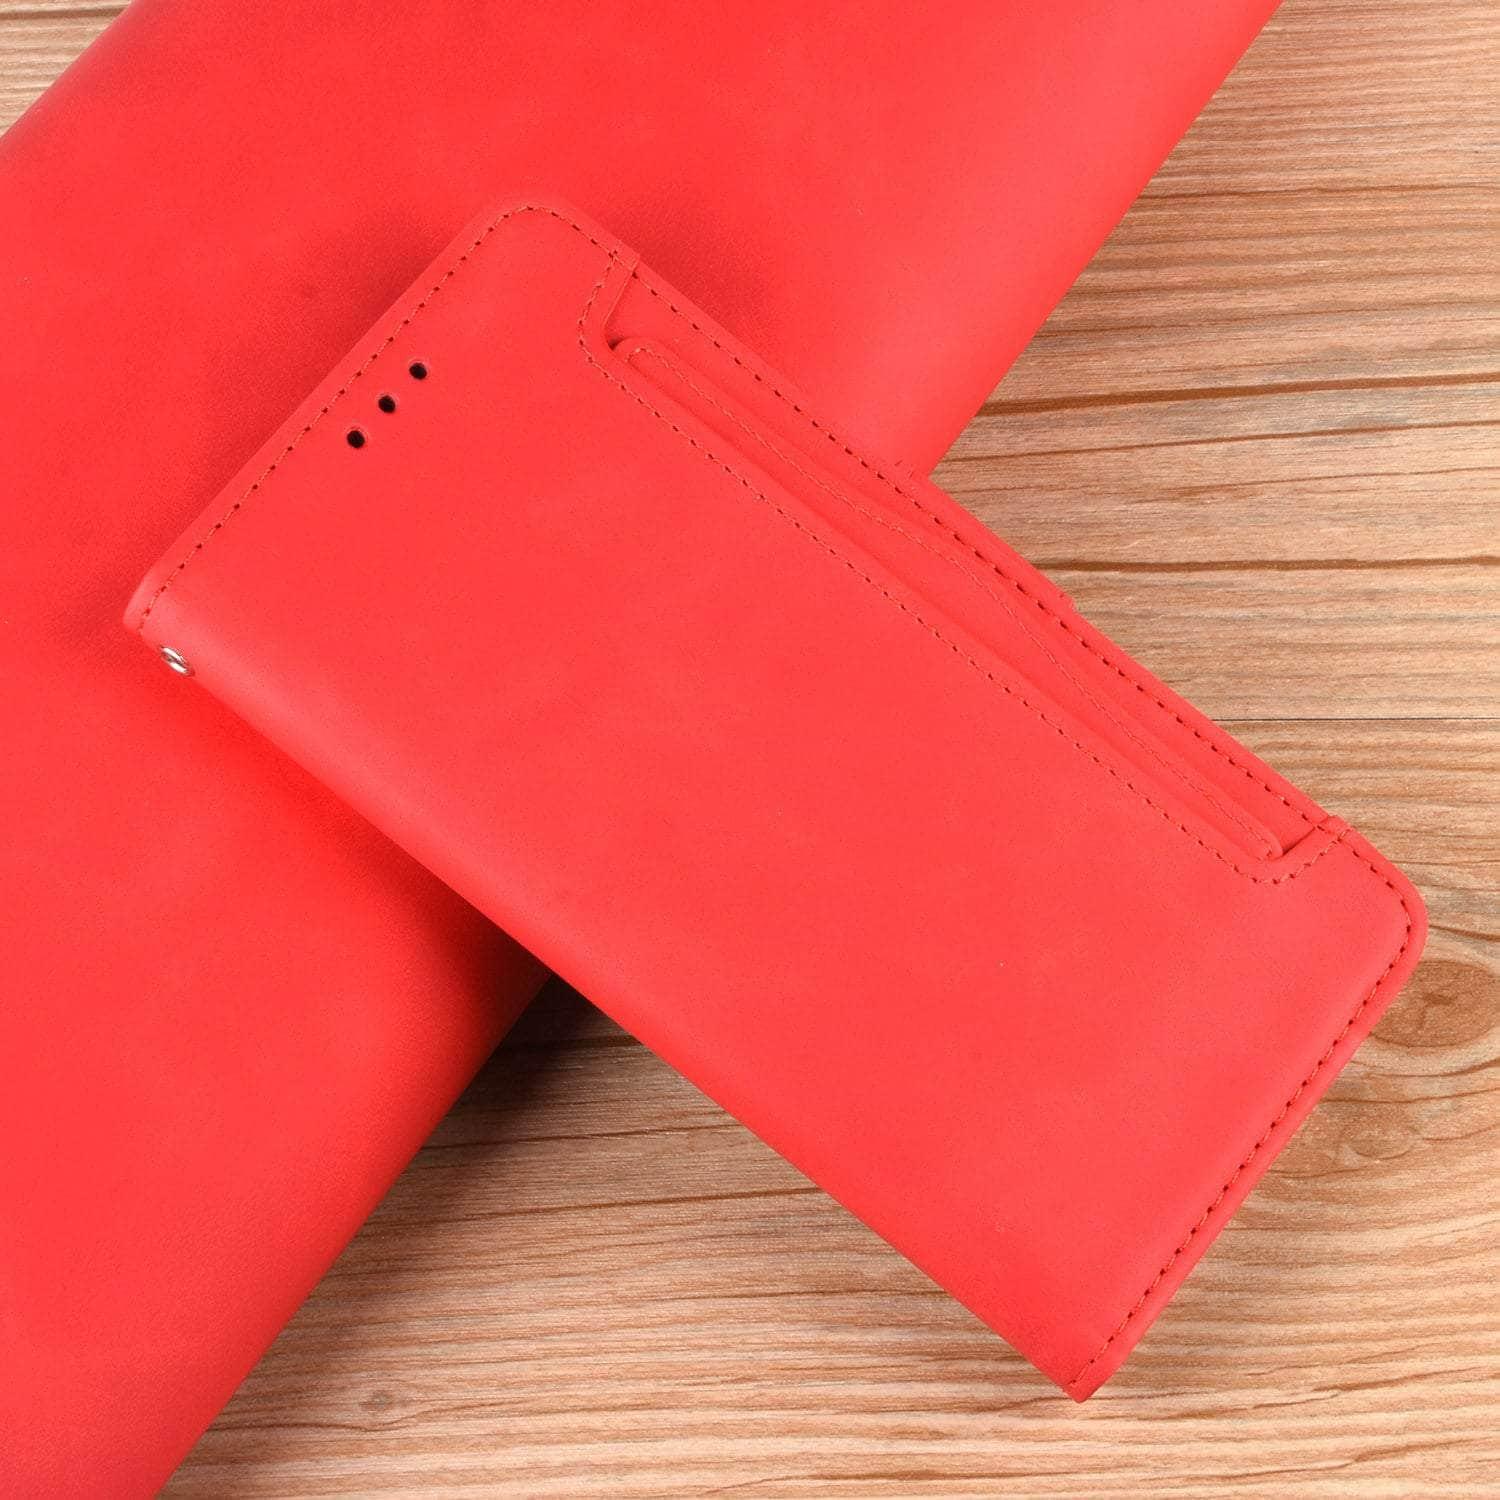 Casebuddy Vegan Leather Galaxy Z Fold 4 Pen Slot Case